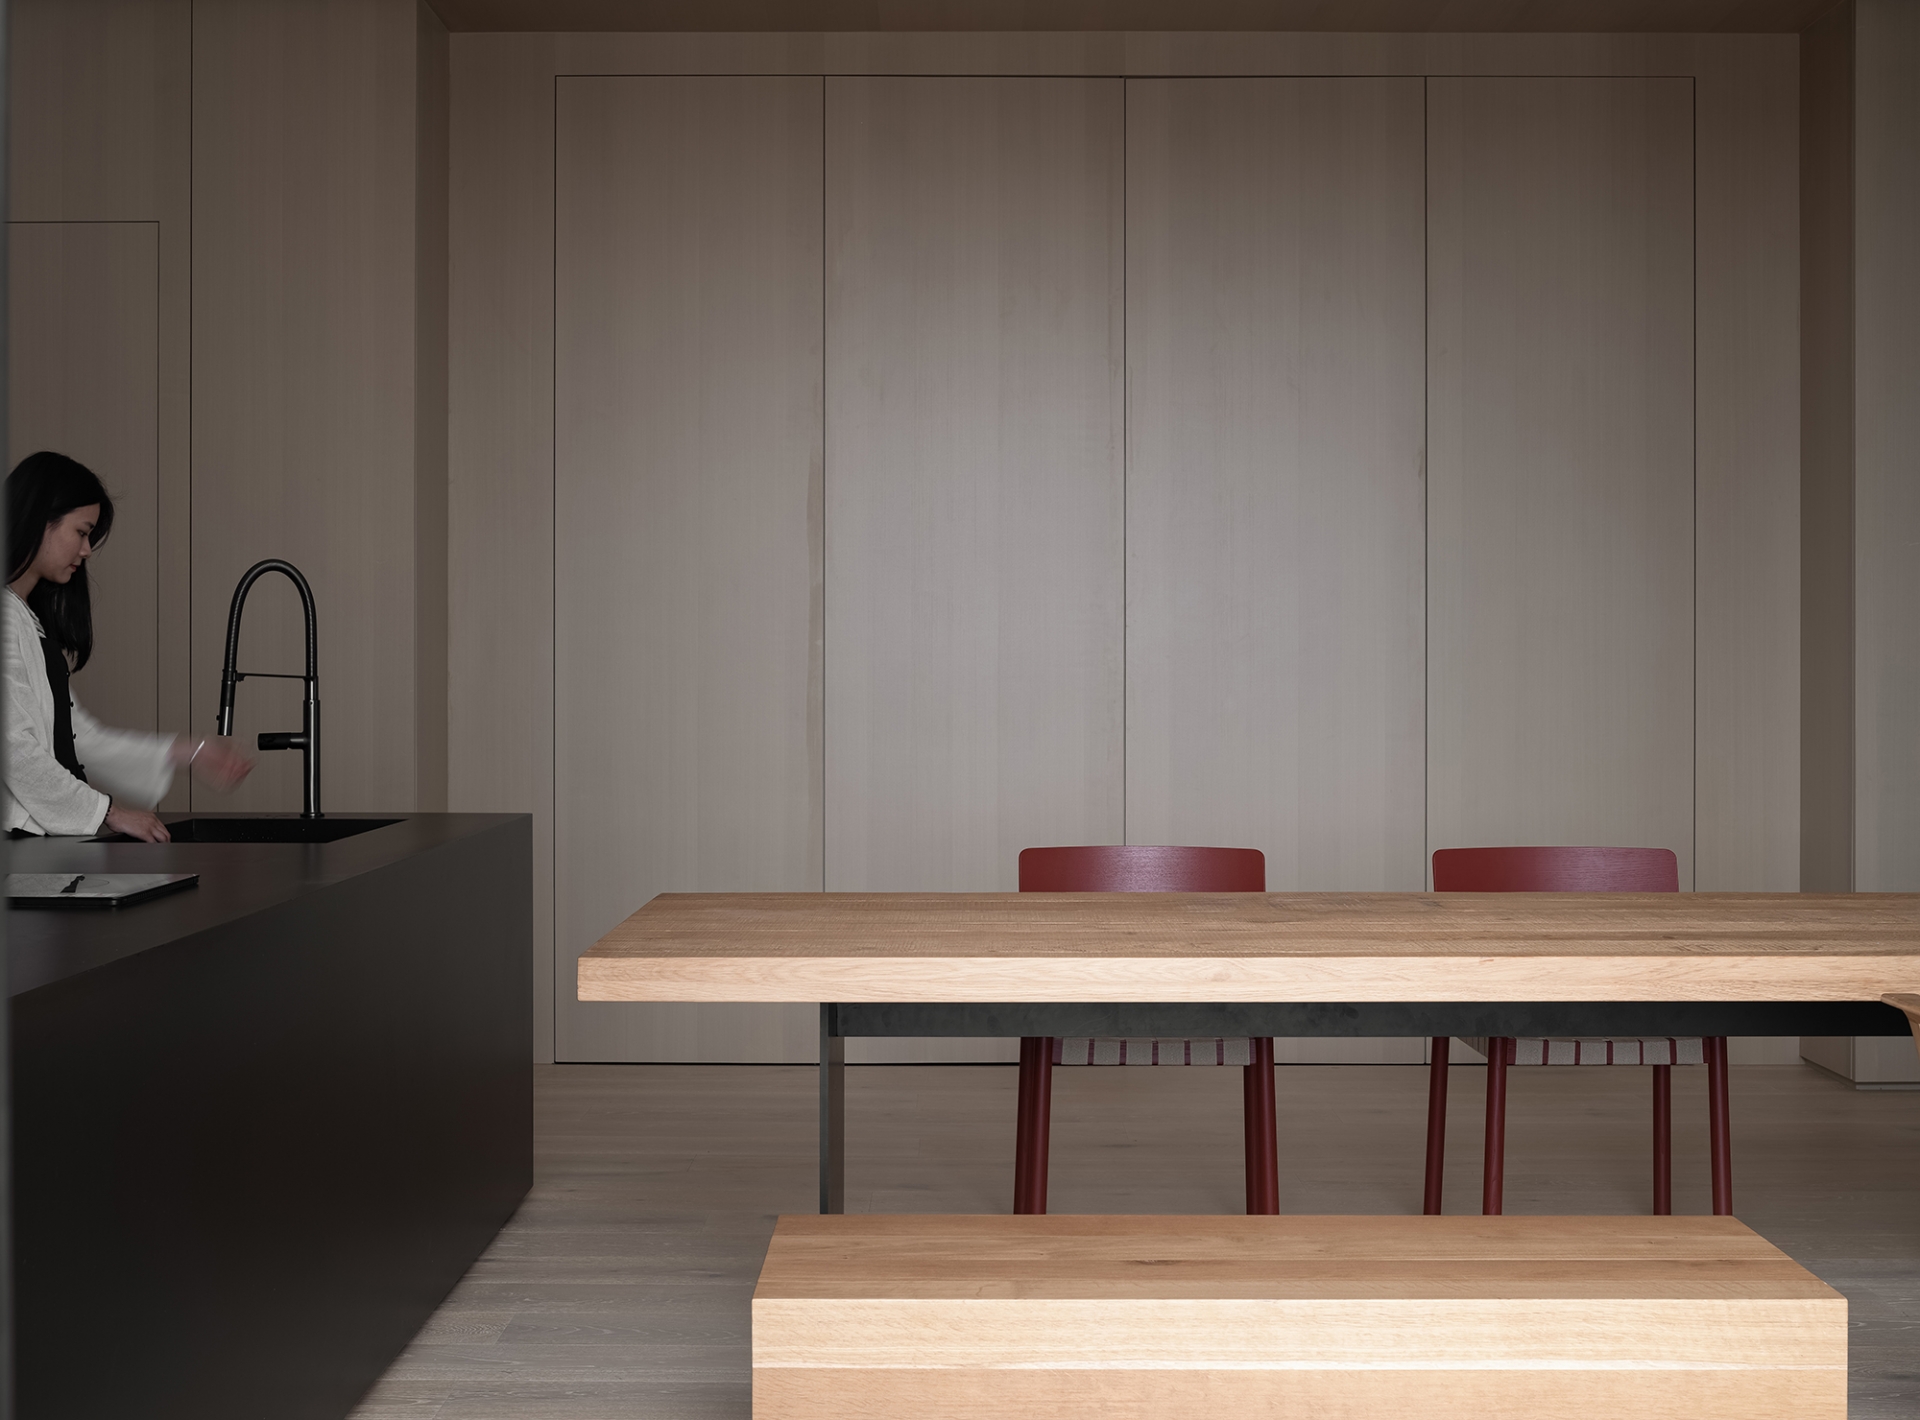 Khu vực phòng bếp với tone màu đen sang trọng, nội thất với đường nét tinh giản, tạo sự tương phản về màu sắc với hệ thống tủ lưu trữ cao kịch trần cũng như bàn ăn.